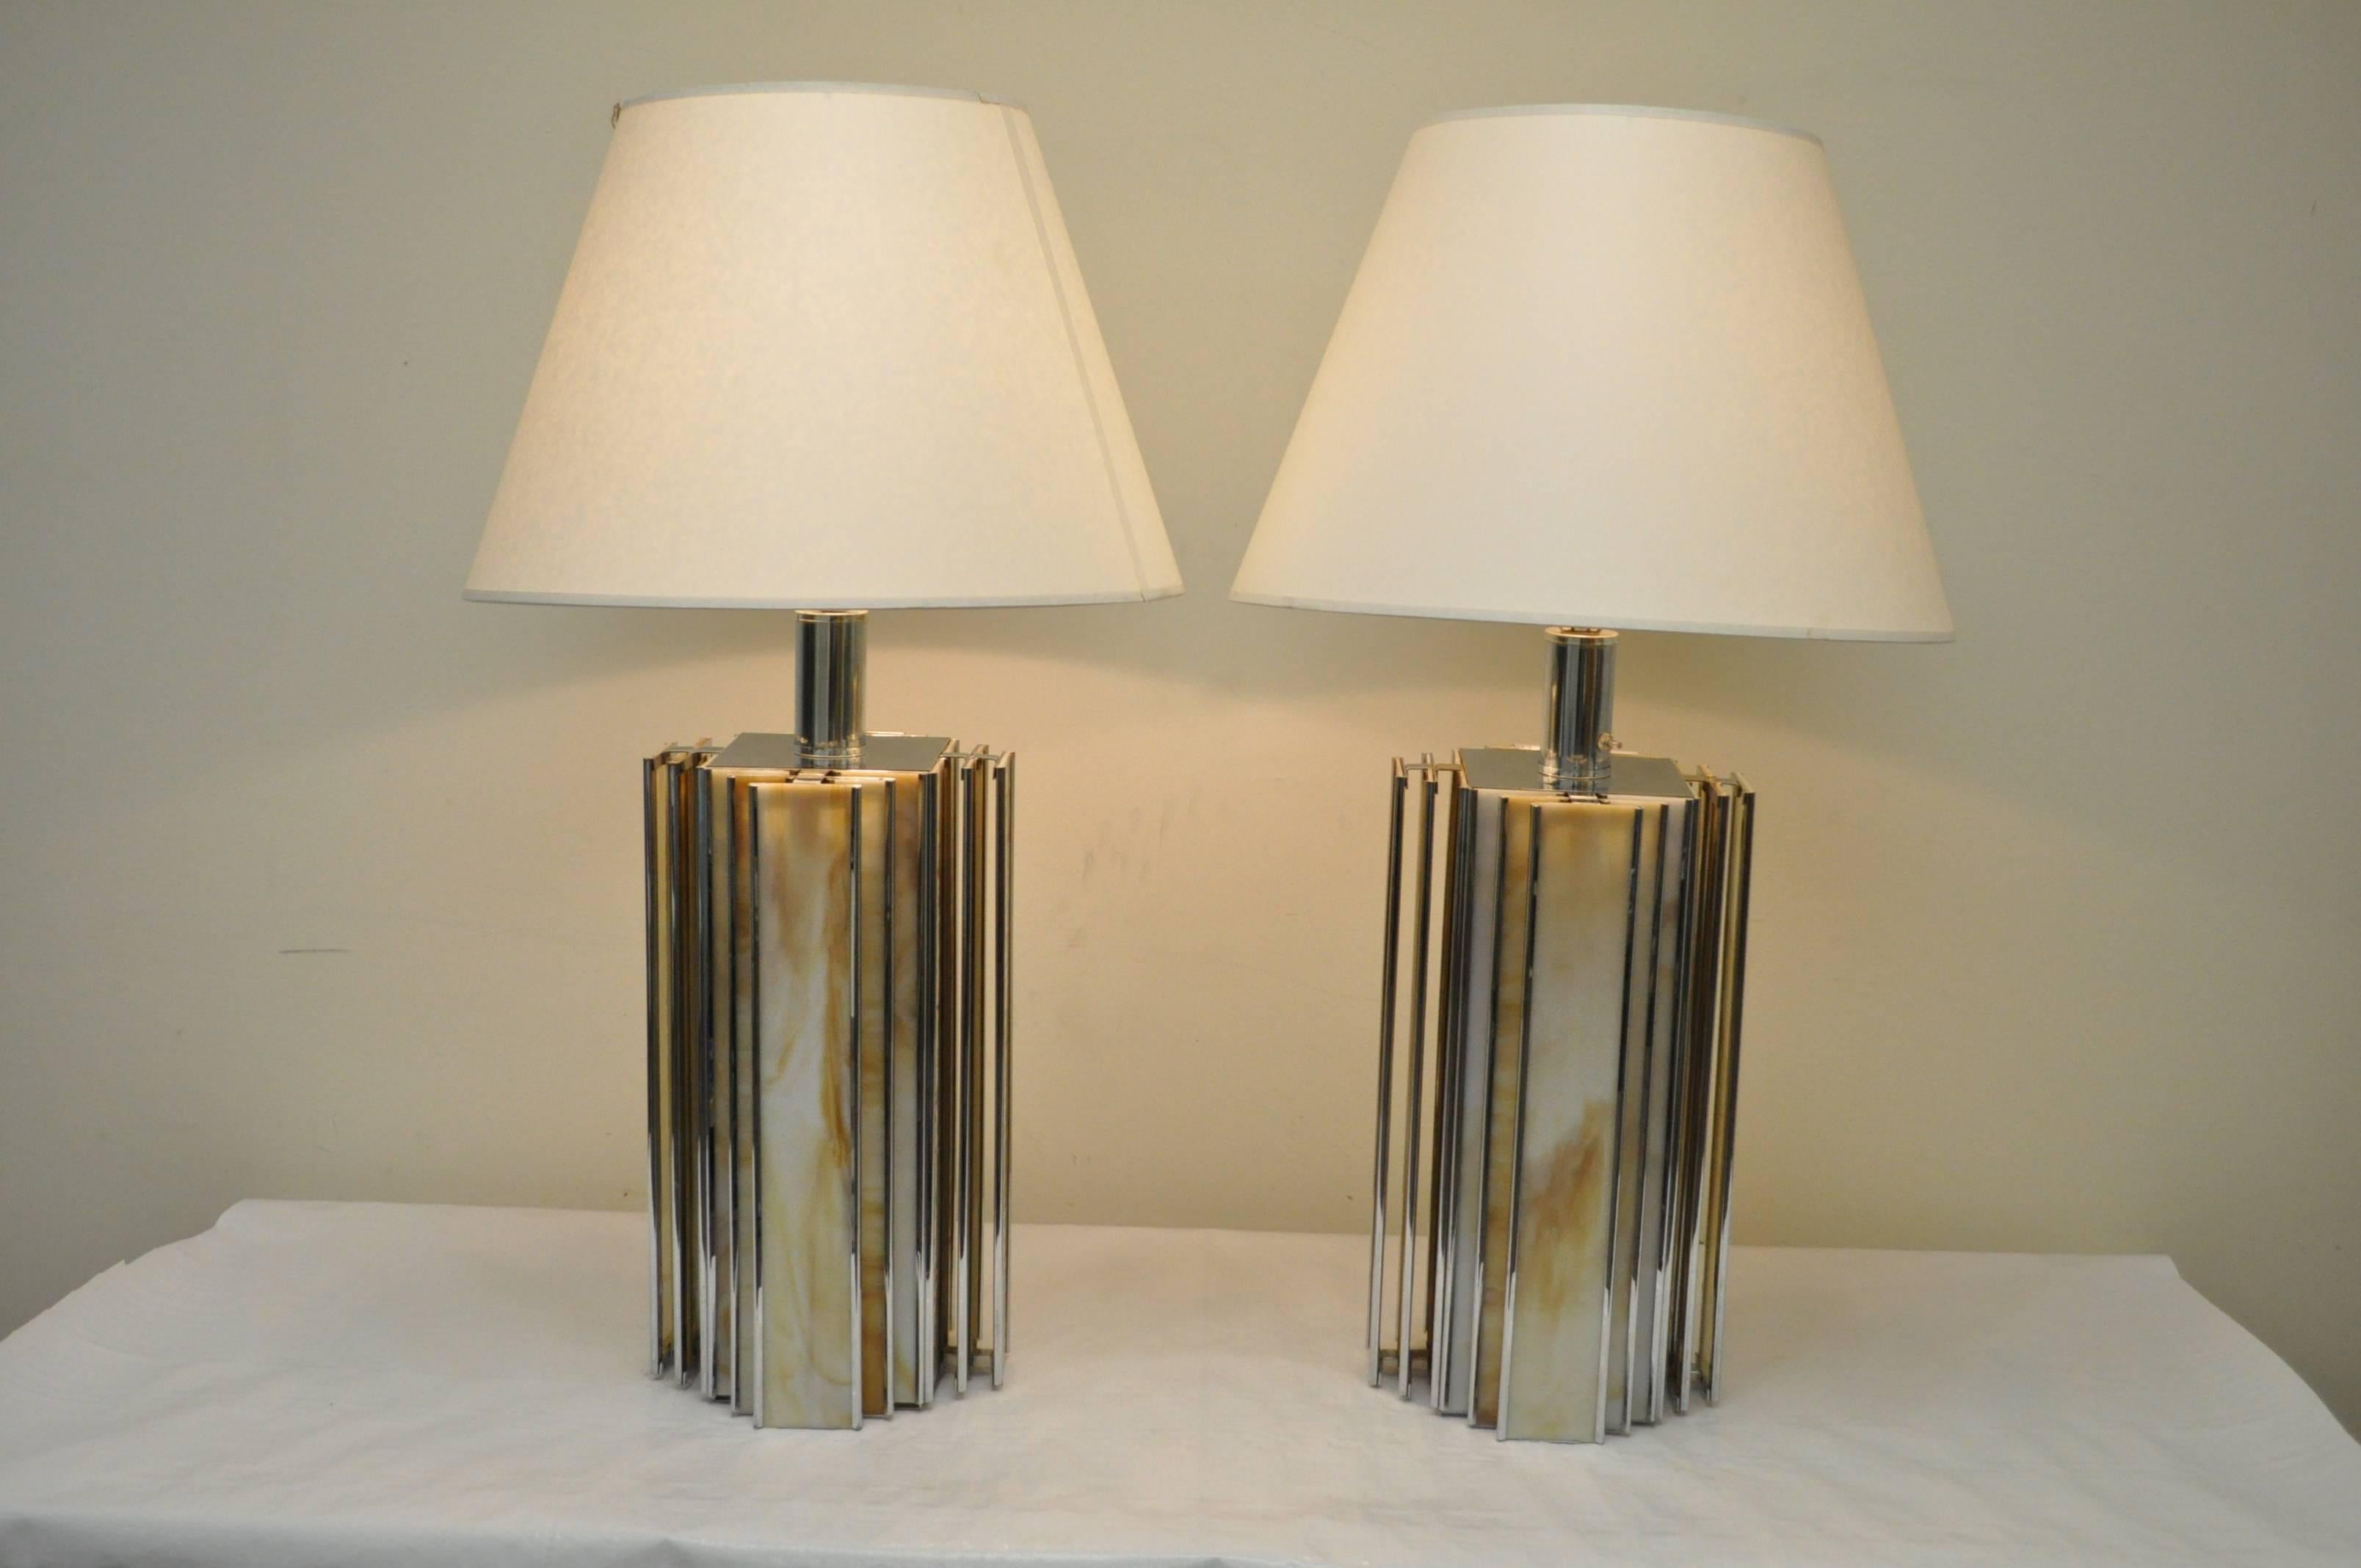 Ein Paar Tischlampen aus Chrom und Schlackenglas. Die Lampen haben ein elegantes, modernes Design mit vom Art Deco inspirierten geometrischen Linien und bestehen aus verchromten Rahmen mit farbenfrohen Schlackenglaseinsätzen. Die Sockel leuchten